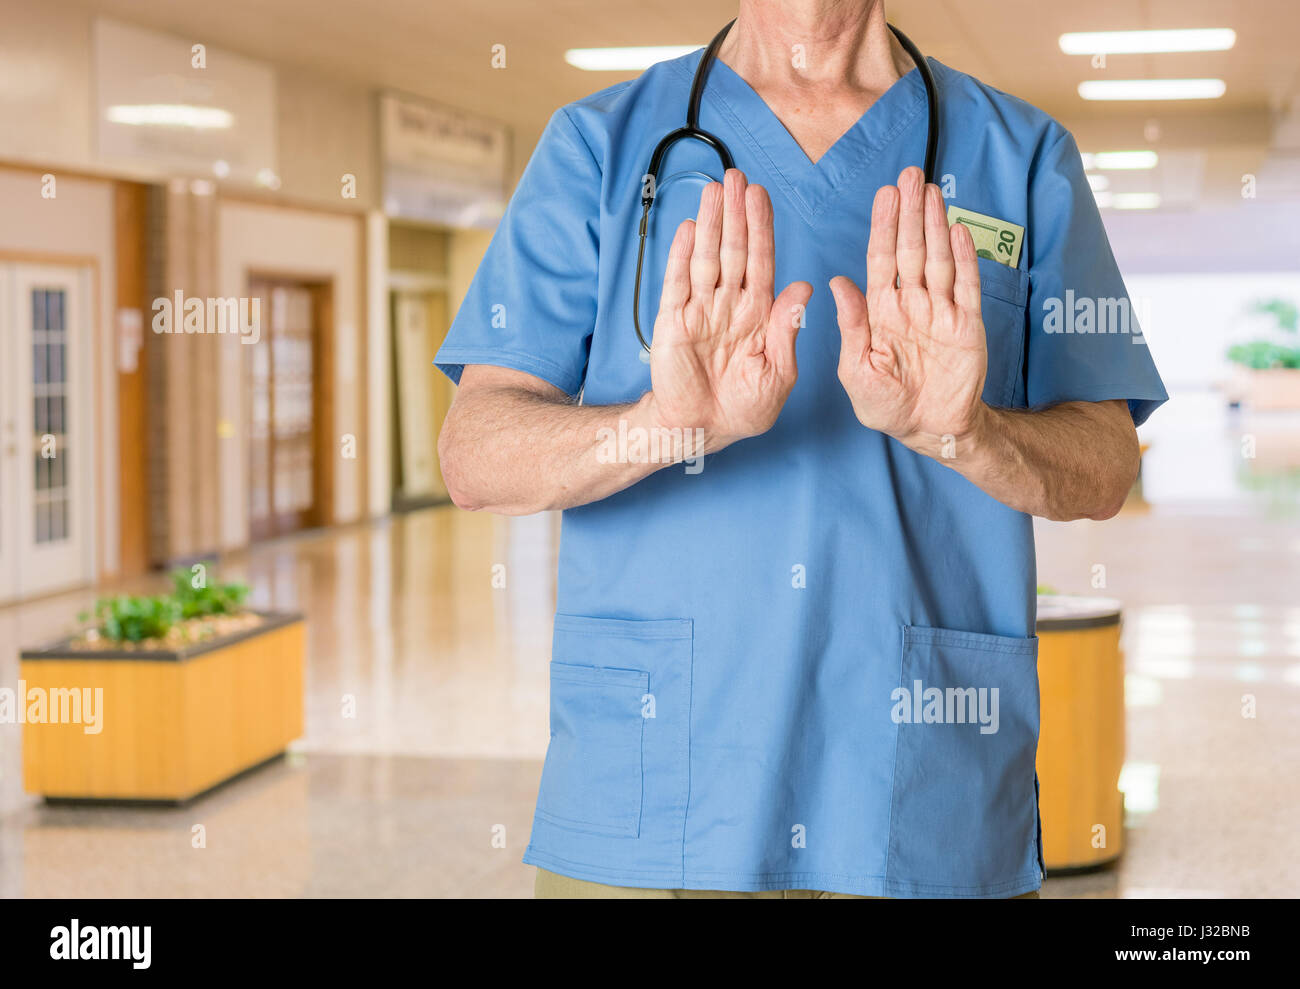 Arzt in Scrubs im Krankenhaus Einreiseverweigerung für Behandlung - Gesundheitswesen, Krankenversicherung Konzept Stockfoto